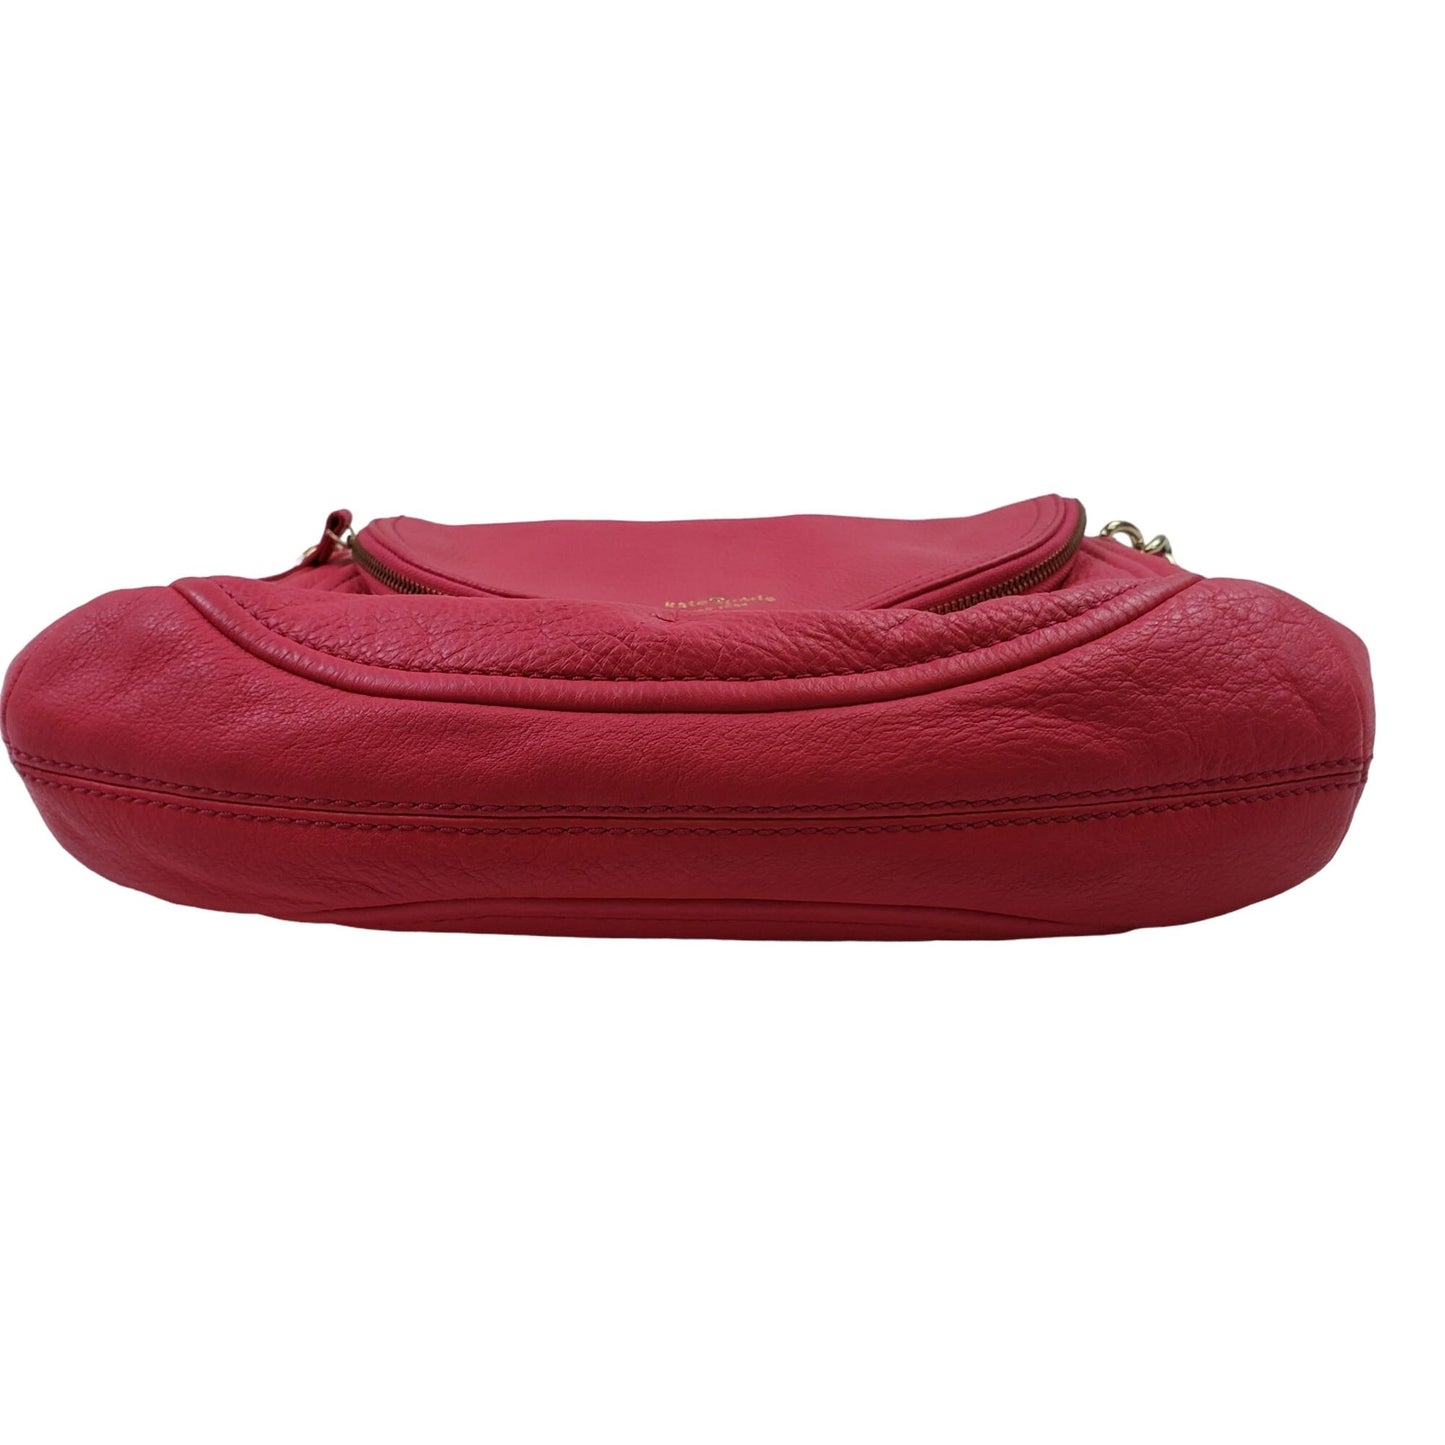 Kate Spade Pink Pebble Leather Shoulder Handbag